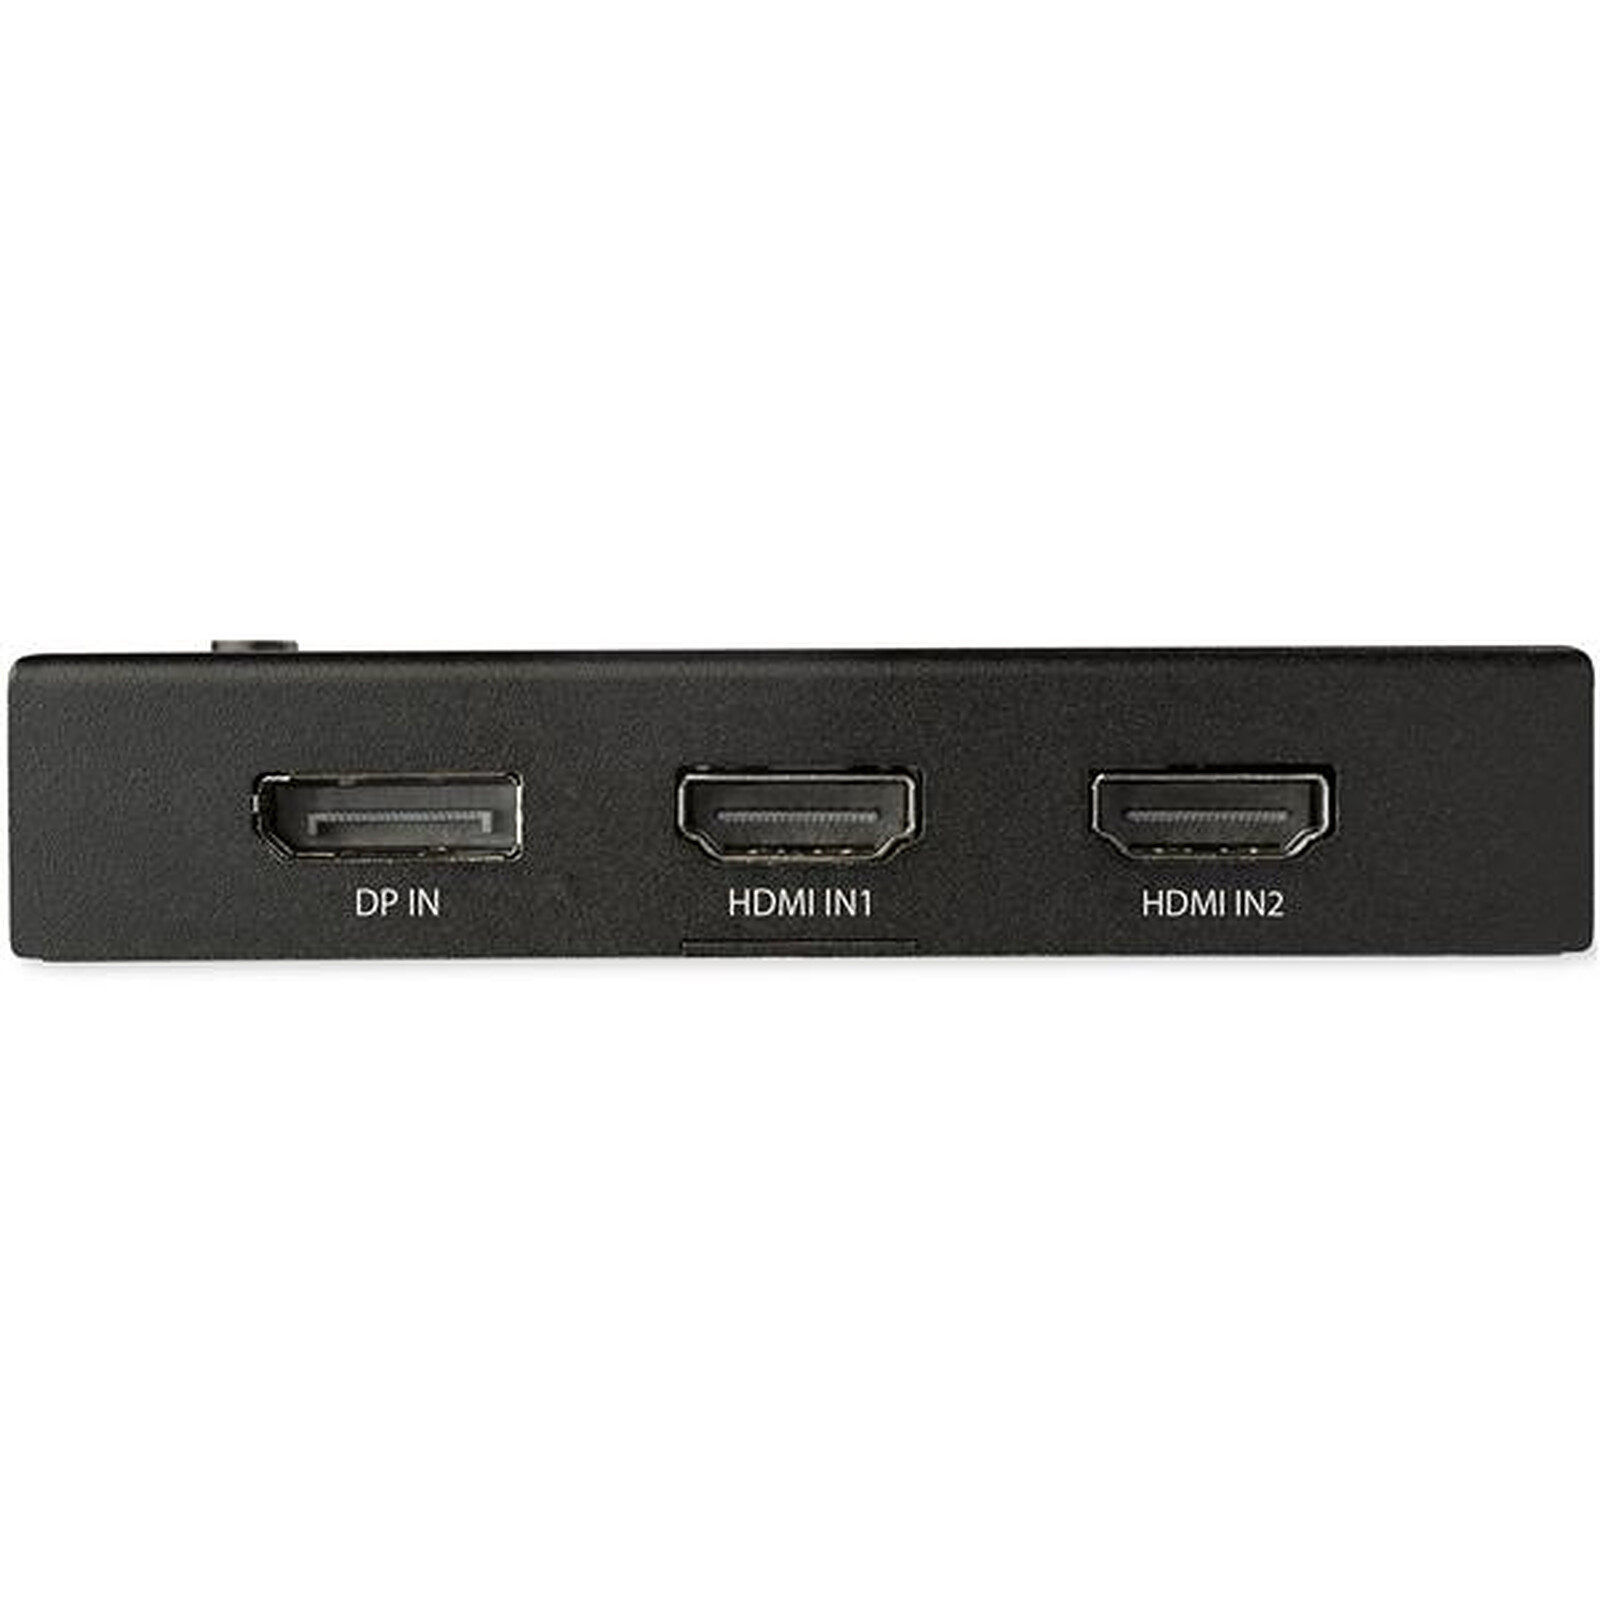 Conmutador HDMI 4K 60 Hz de StarTech.com - 3x HDMI 1x DisplayPort